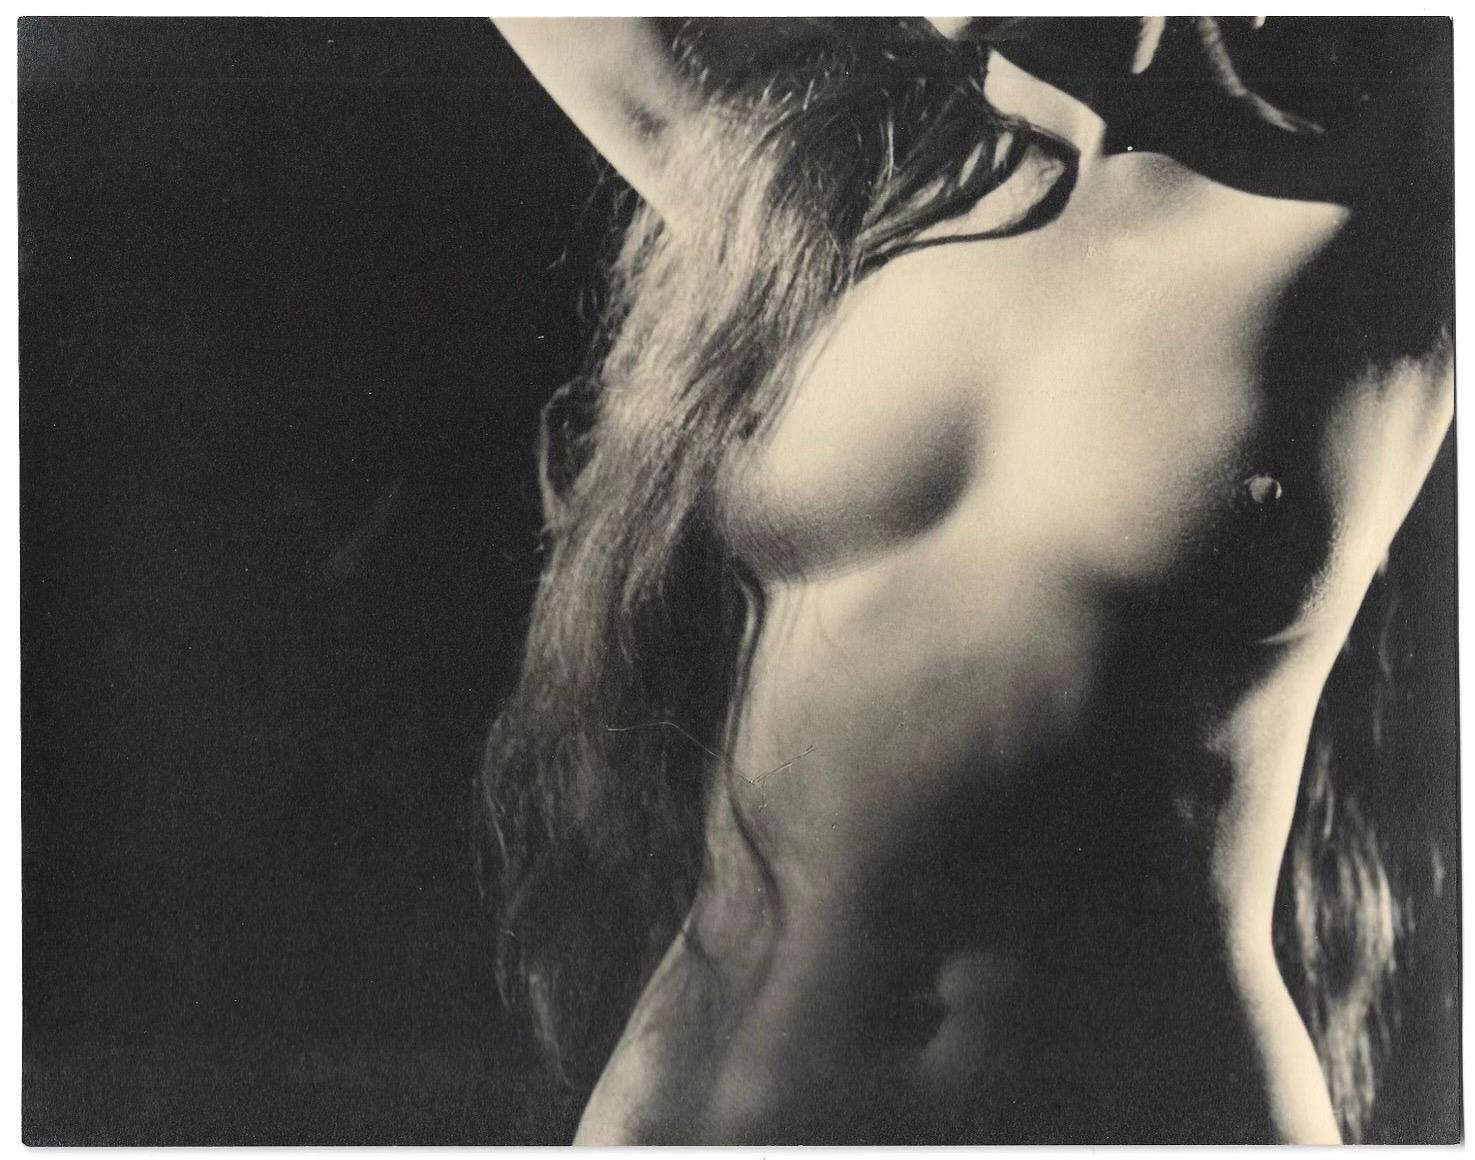 Schwarz-Weiß-Fotografie eines weiblichen Akts der zeitgenössischen amerikanischen Fotografin (Fotorealismus), Photograph, von Dan O'Neill